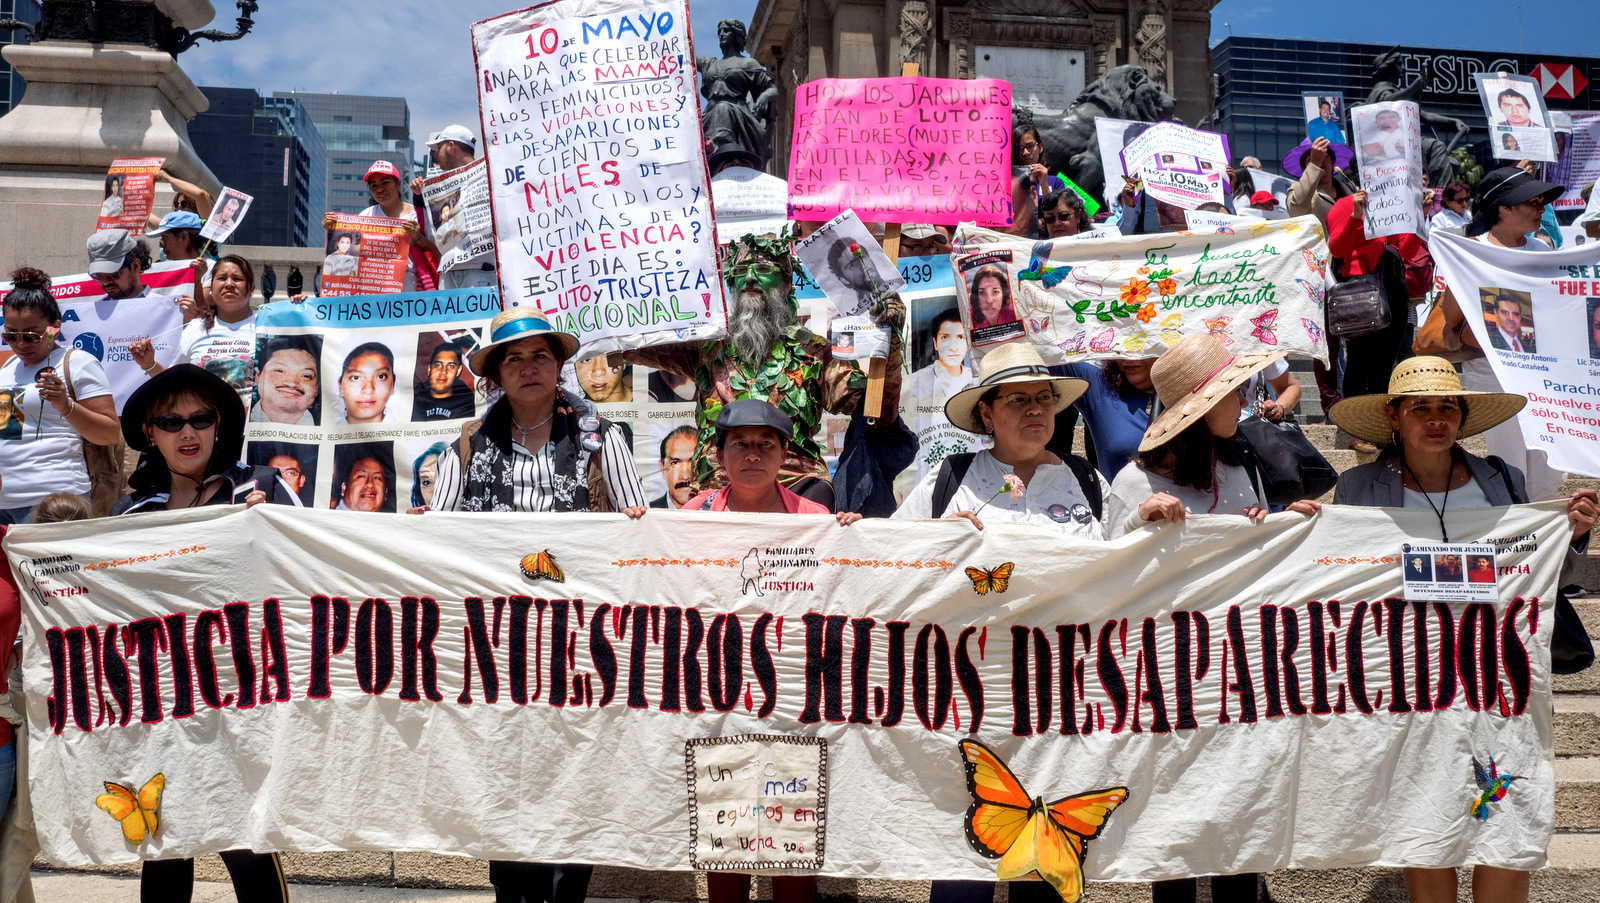 У женщин есть знак, который гласит «Справедливость для наших исчезнувших детей» в День матери, чтобы потребовать справедливость для их исчезнувших детей, Мехико, 10 мая 2018. (Фото: Хосе Луис Гранадос Цея)